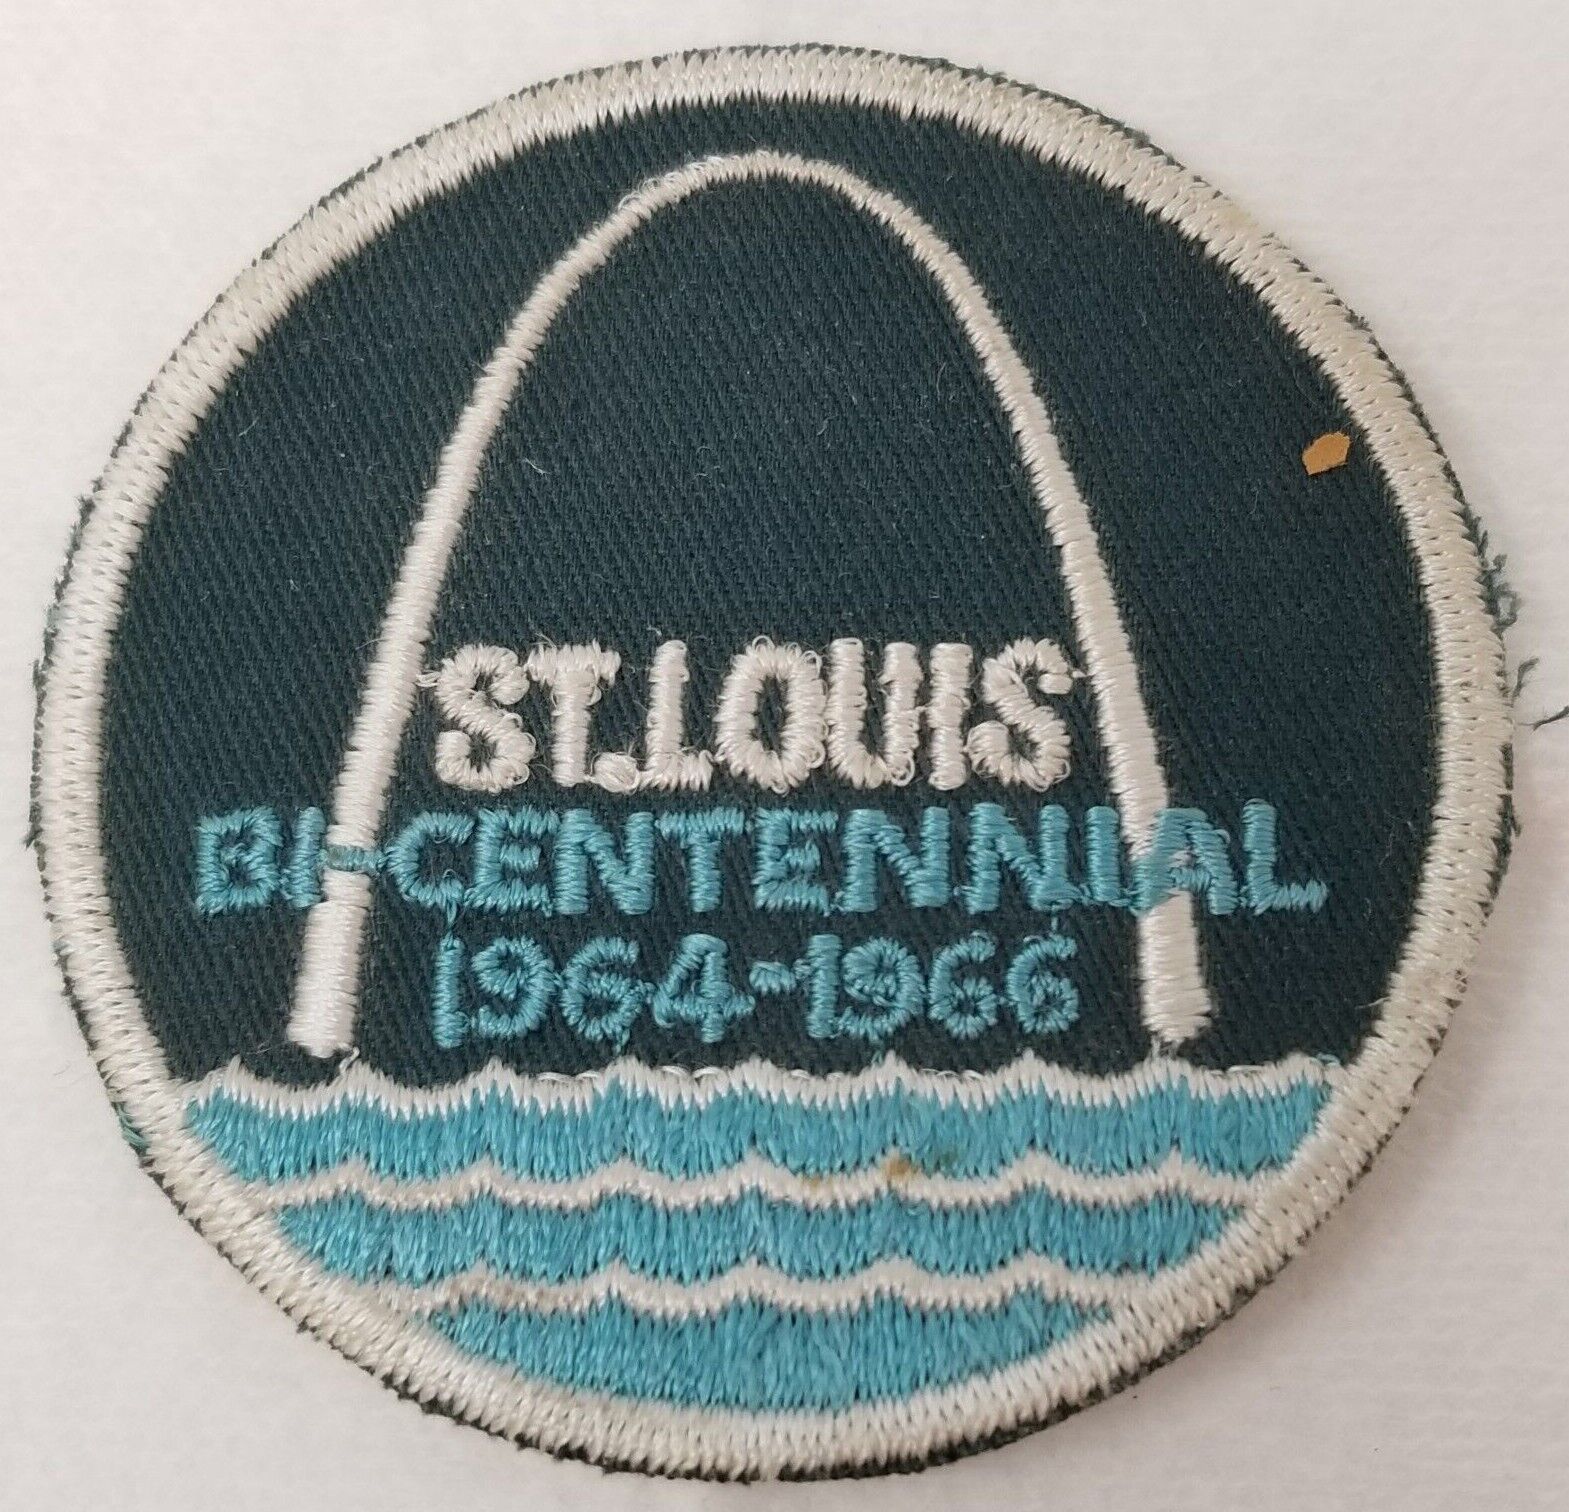 Patch St. Louis Bicentennial Celebration 1964-1966 Aqua Blue Arch